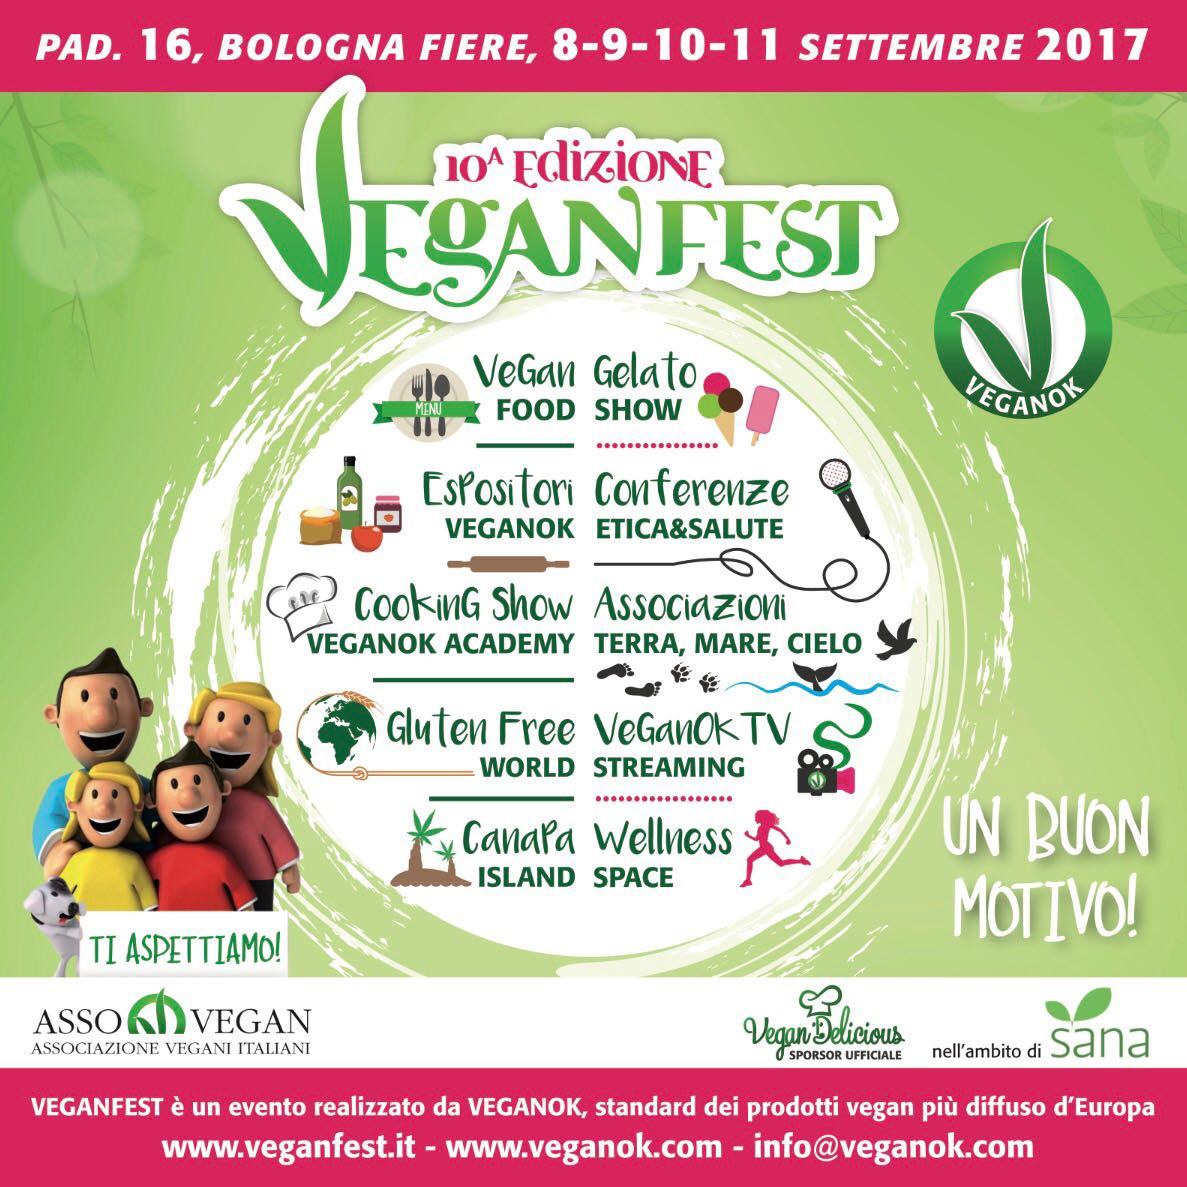 Veganfest edizione n10, tutti a Bologna